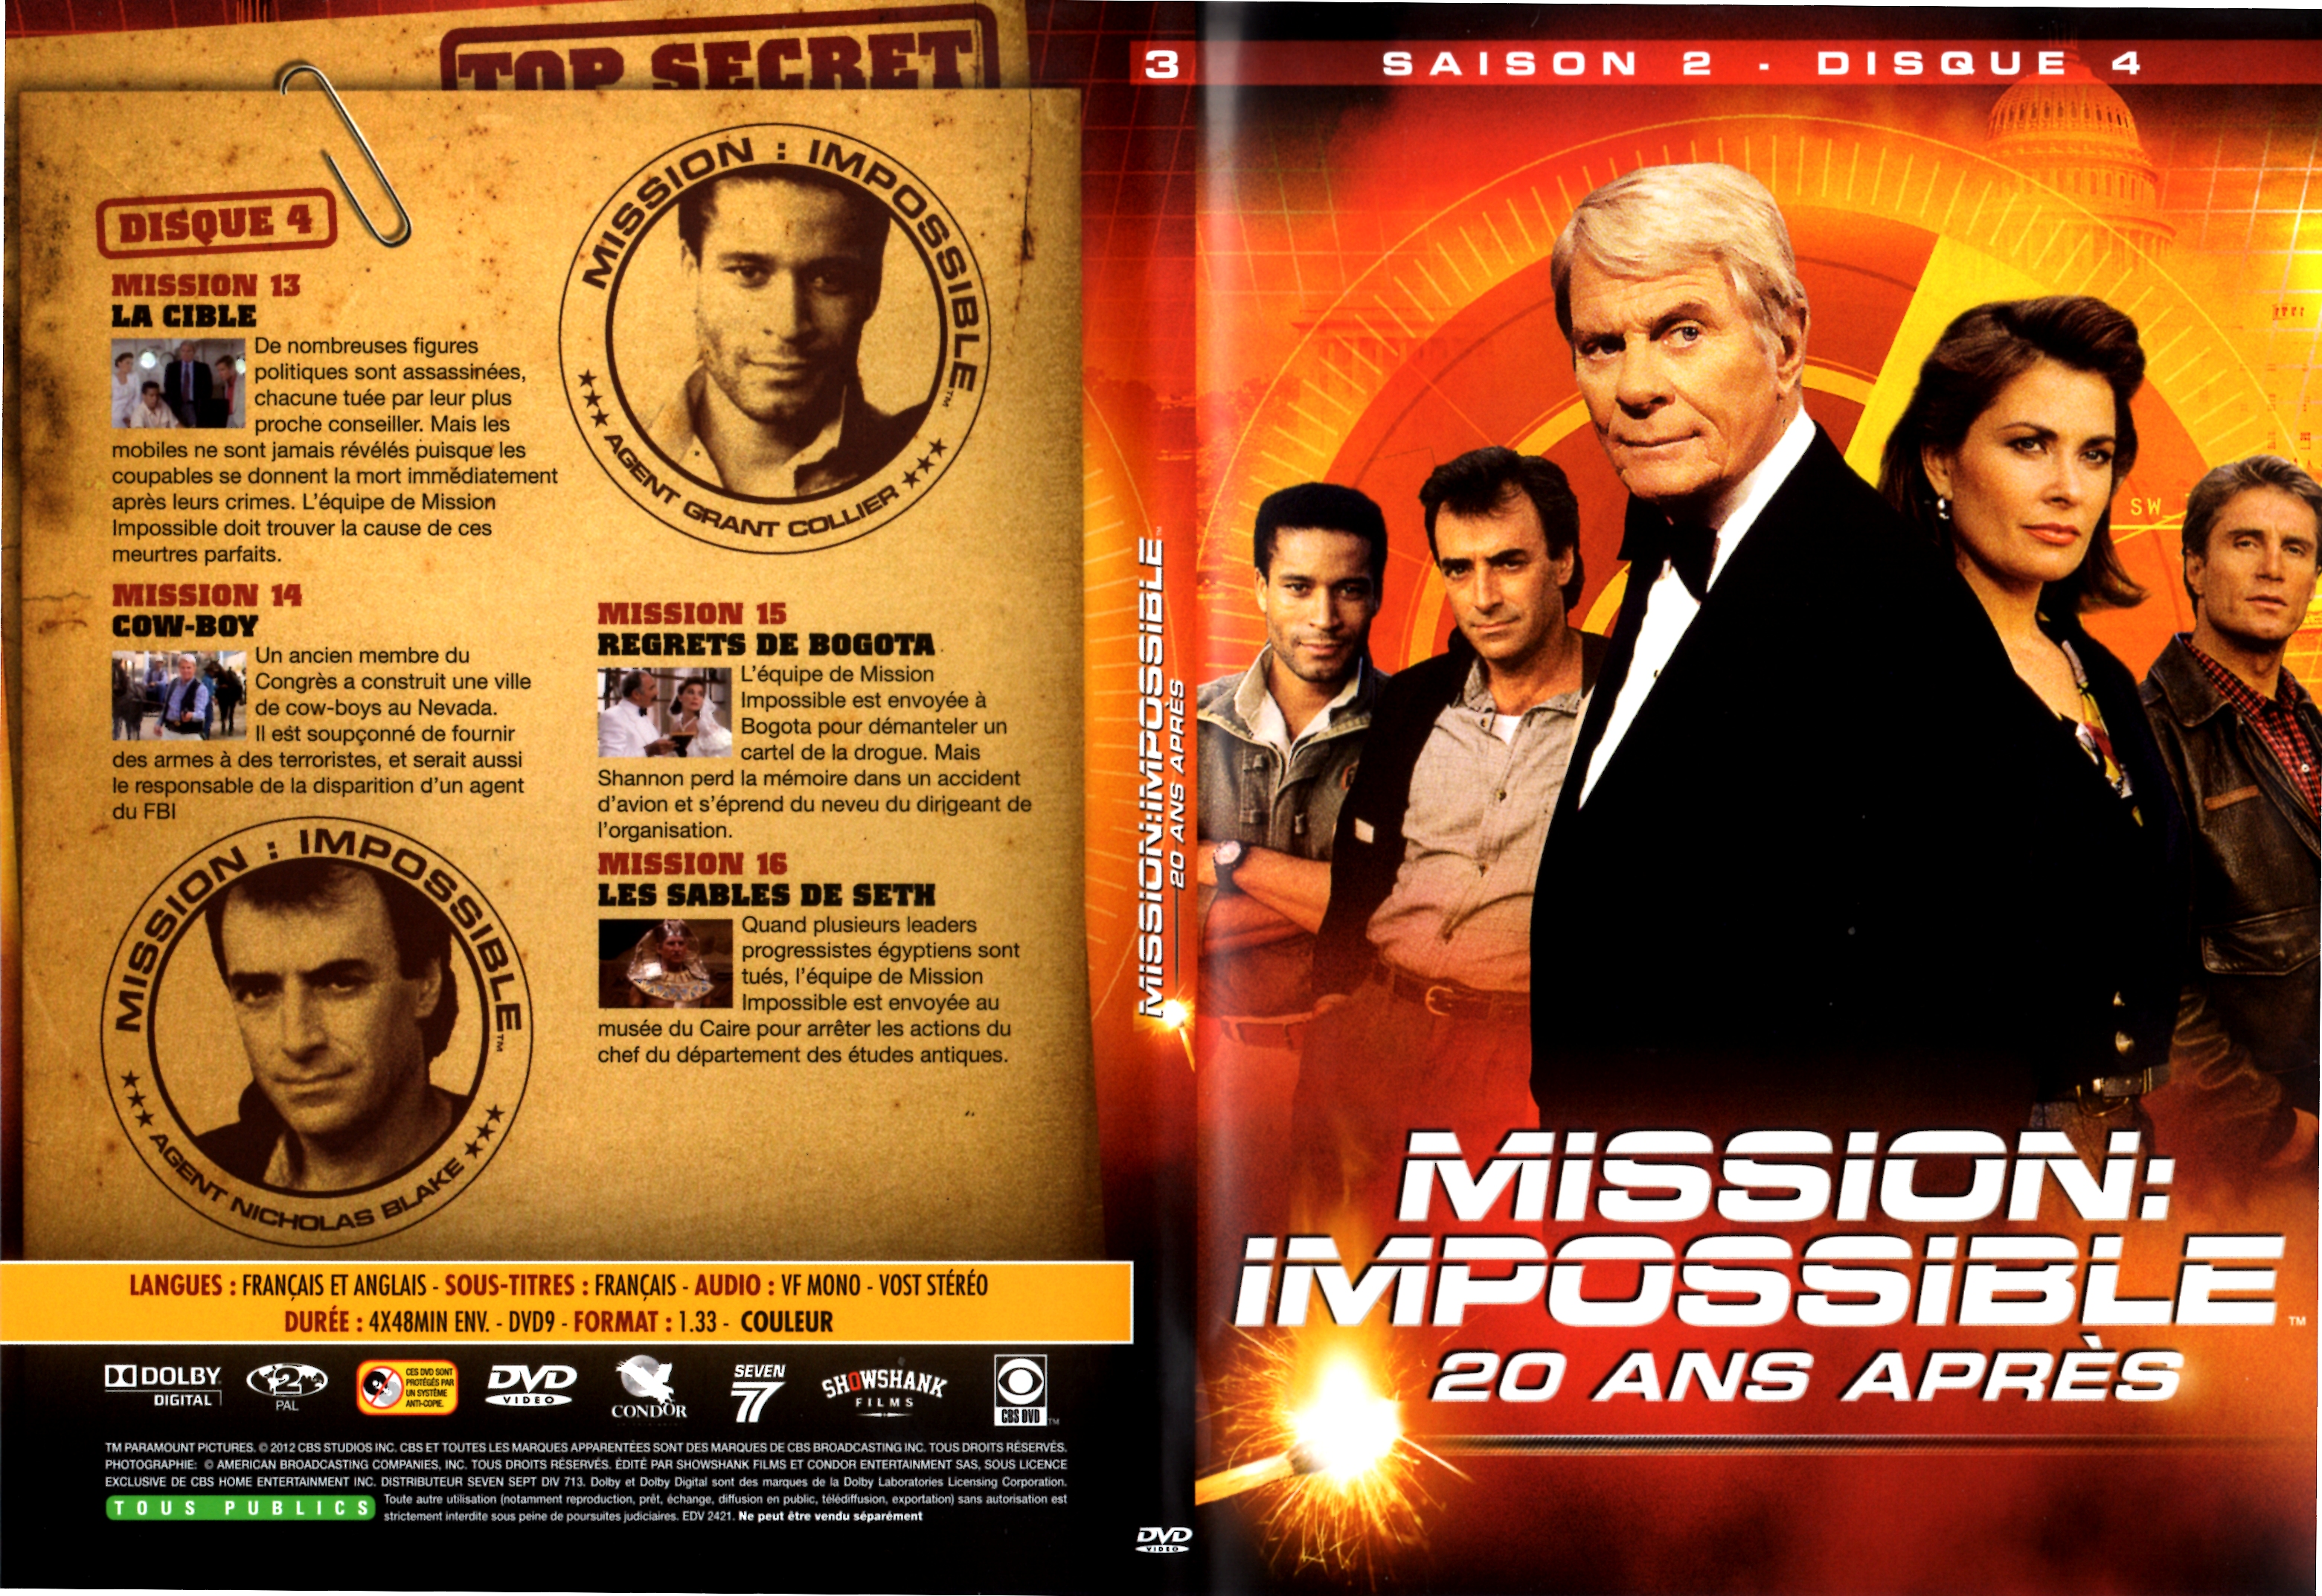 Jaquette DVD Mission impossible 20 ans aprs Saison 2 DVD 3